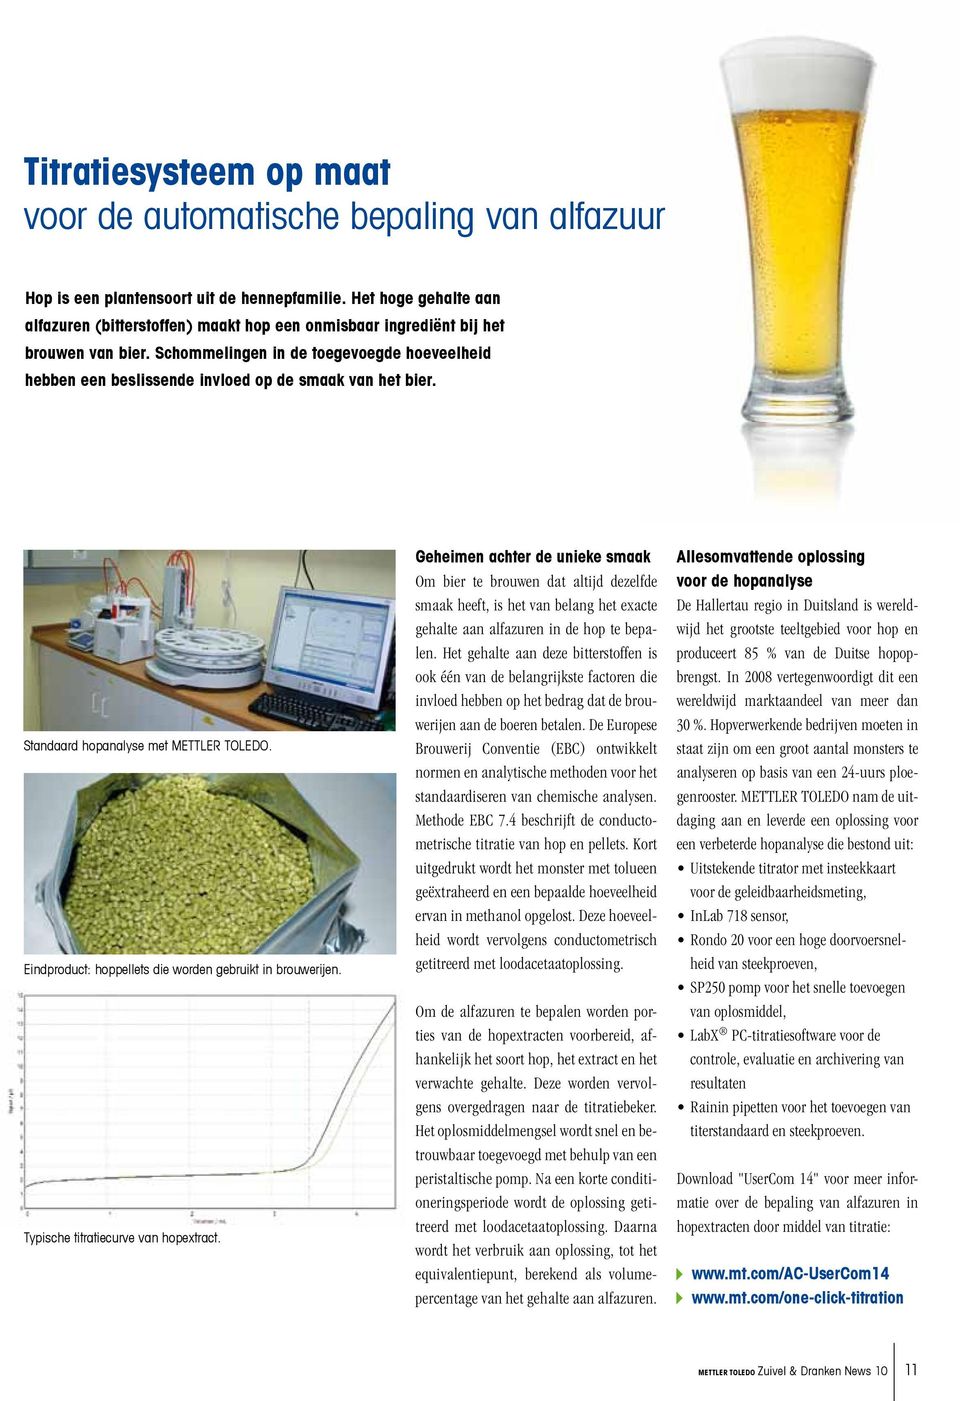 Schommelingen in de toegevoegde hoeveelheid hebben een beslissende invloed op de smaak van het bier. Standaard hopanalyse met METTLER TOLEDO.